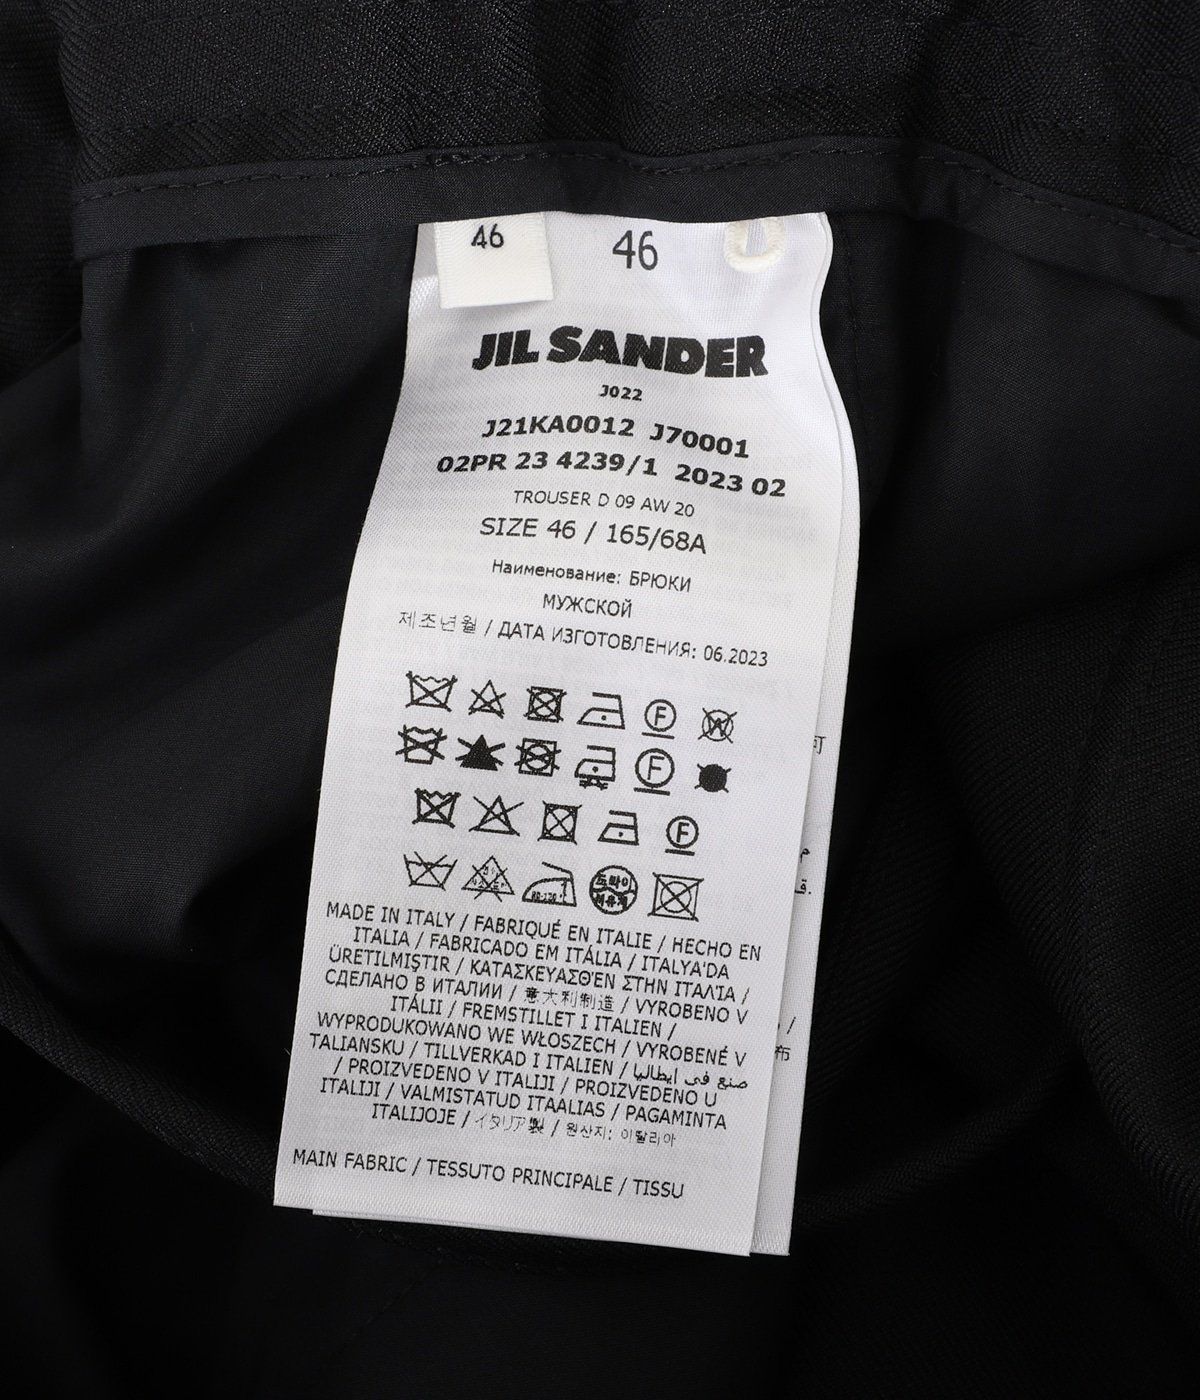 TROUSER D 09 AW 20 | JIL SANDER(ジルサンダー) / パンツ スラックス